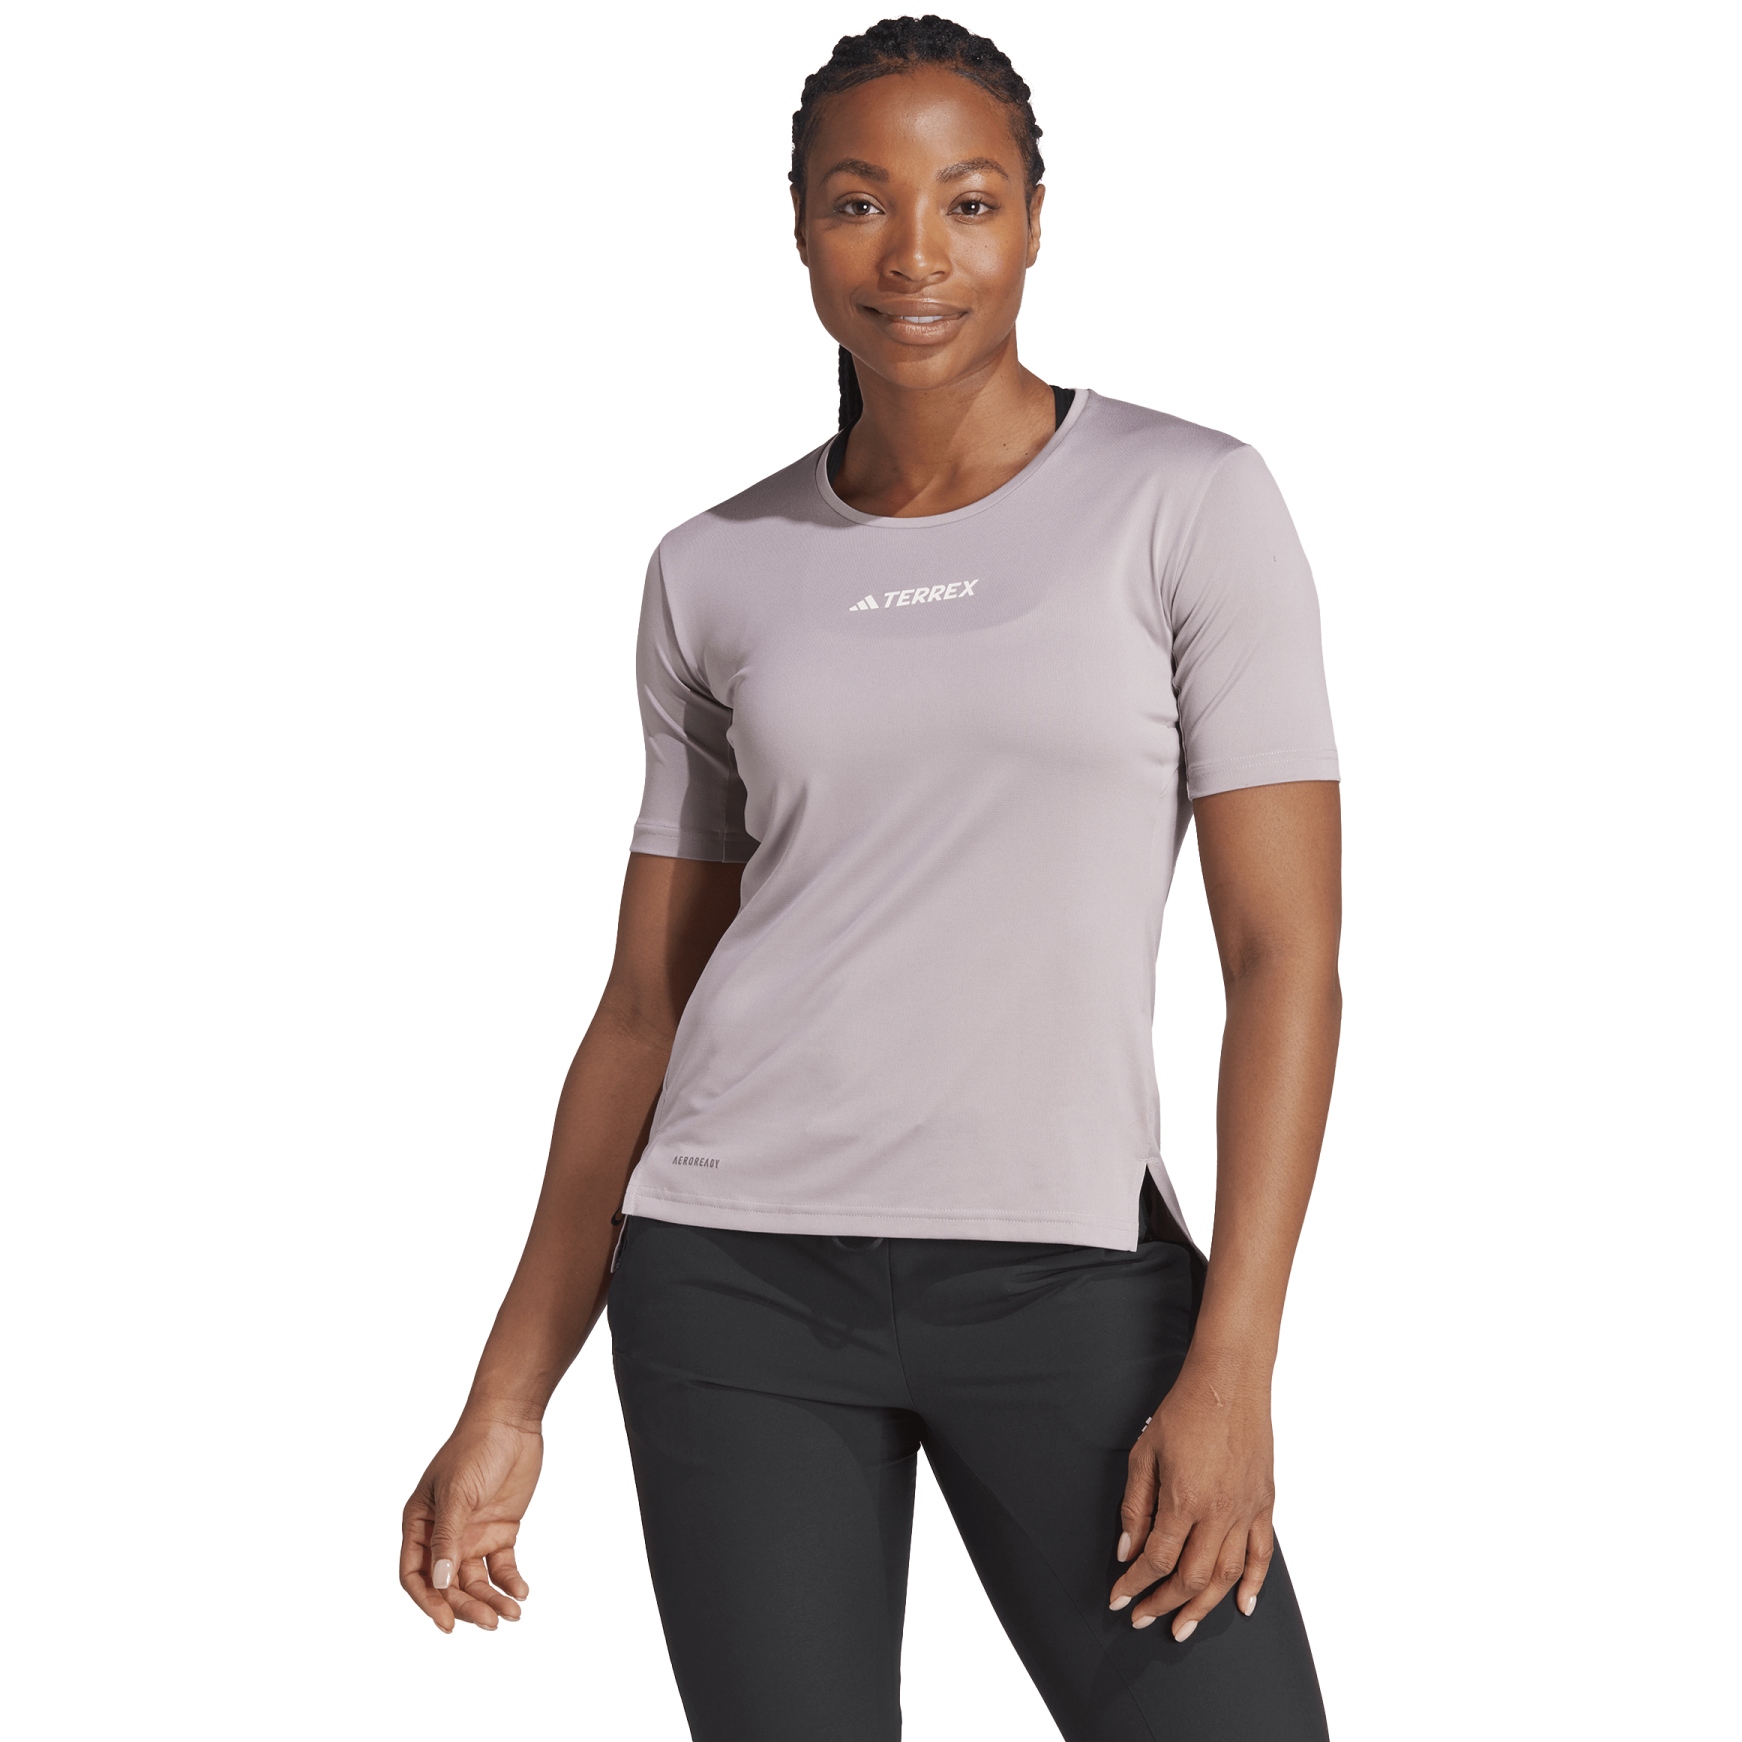 Produktbild von adidas TERREX Multi T-Shirt Damen - preloved fig IS0691